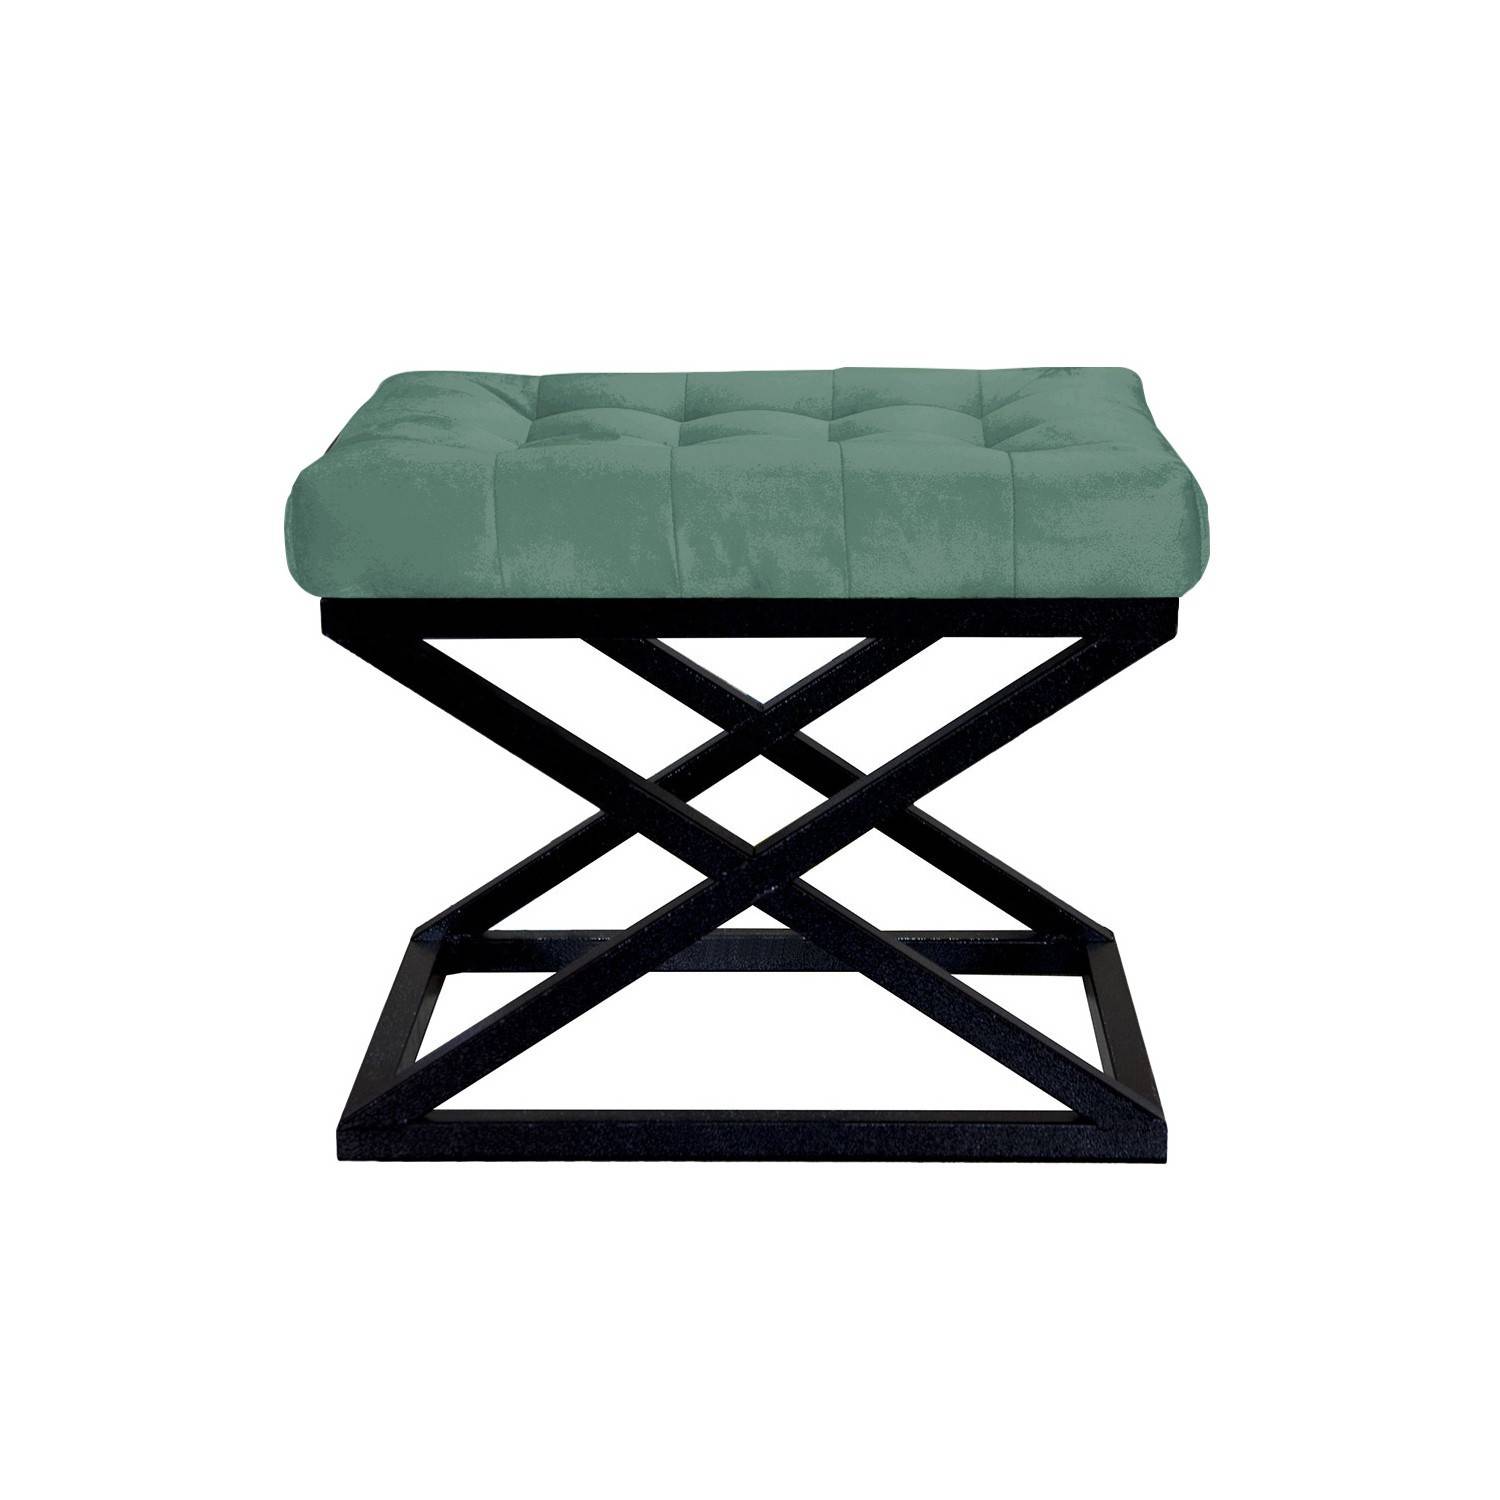 Taburete Ulad de metal negro y terciopelo verde, asiento tapizado